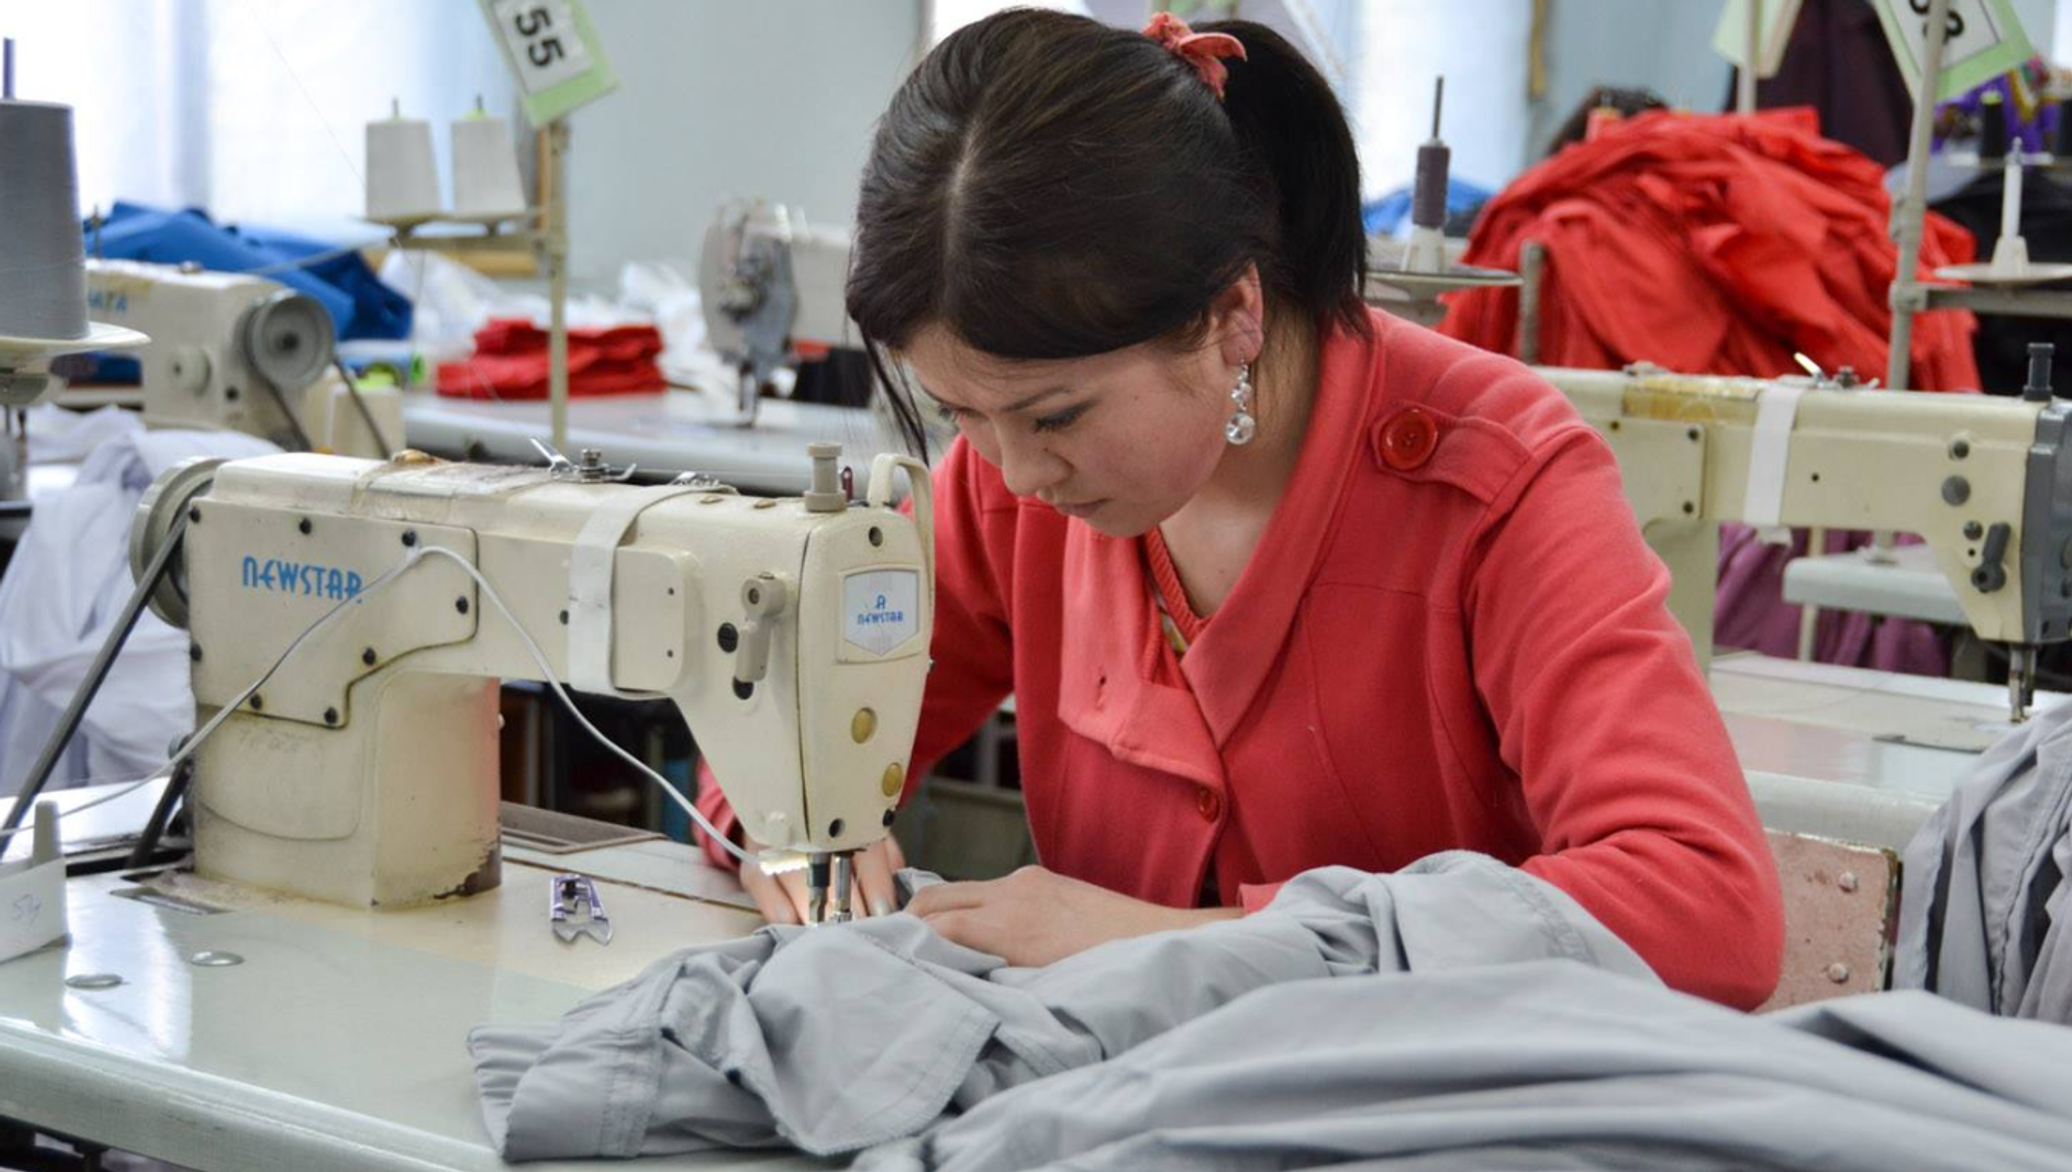 Фабрики пошива женской одежды. Швейная легкая промышленность. Швейный цех. Текстильная и швейная промышленность. Текстильное производство.